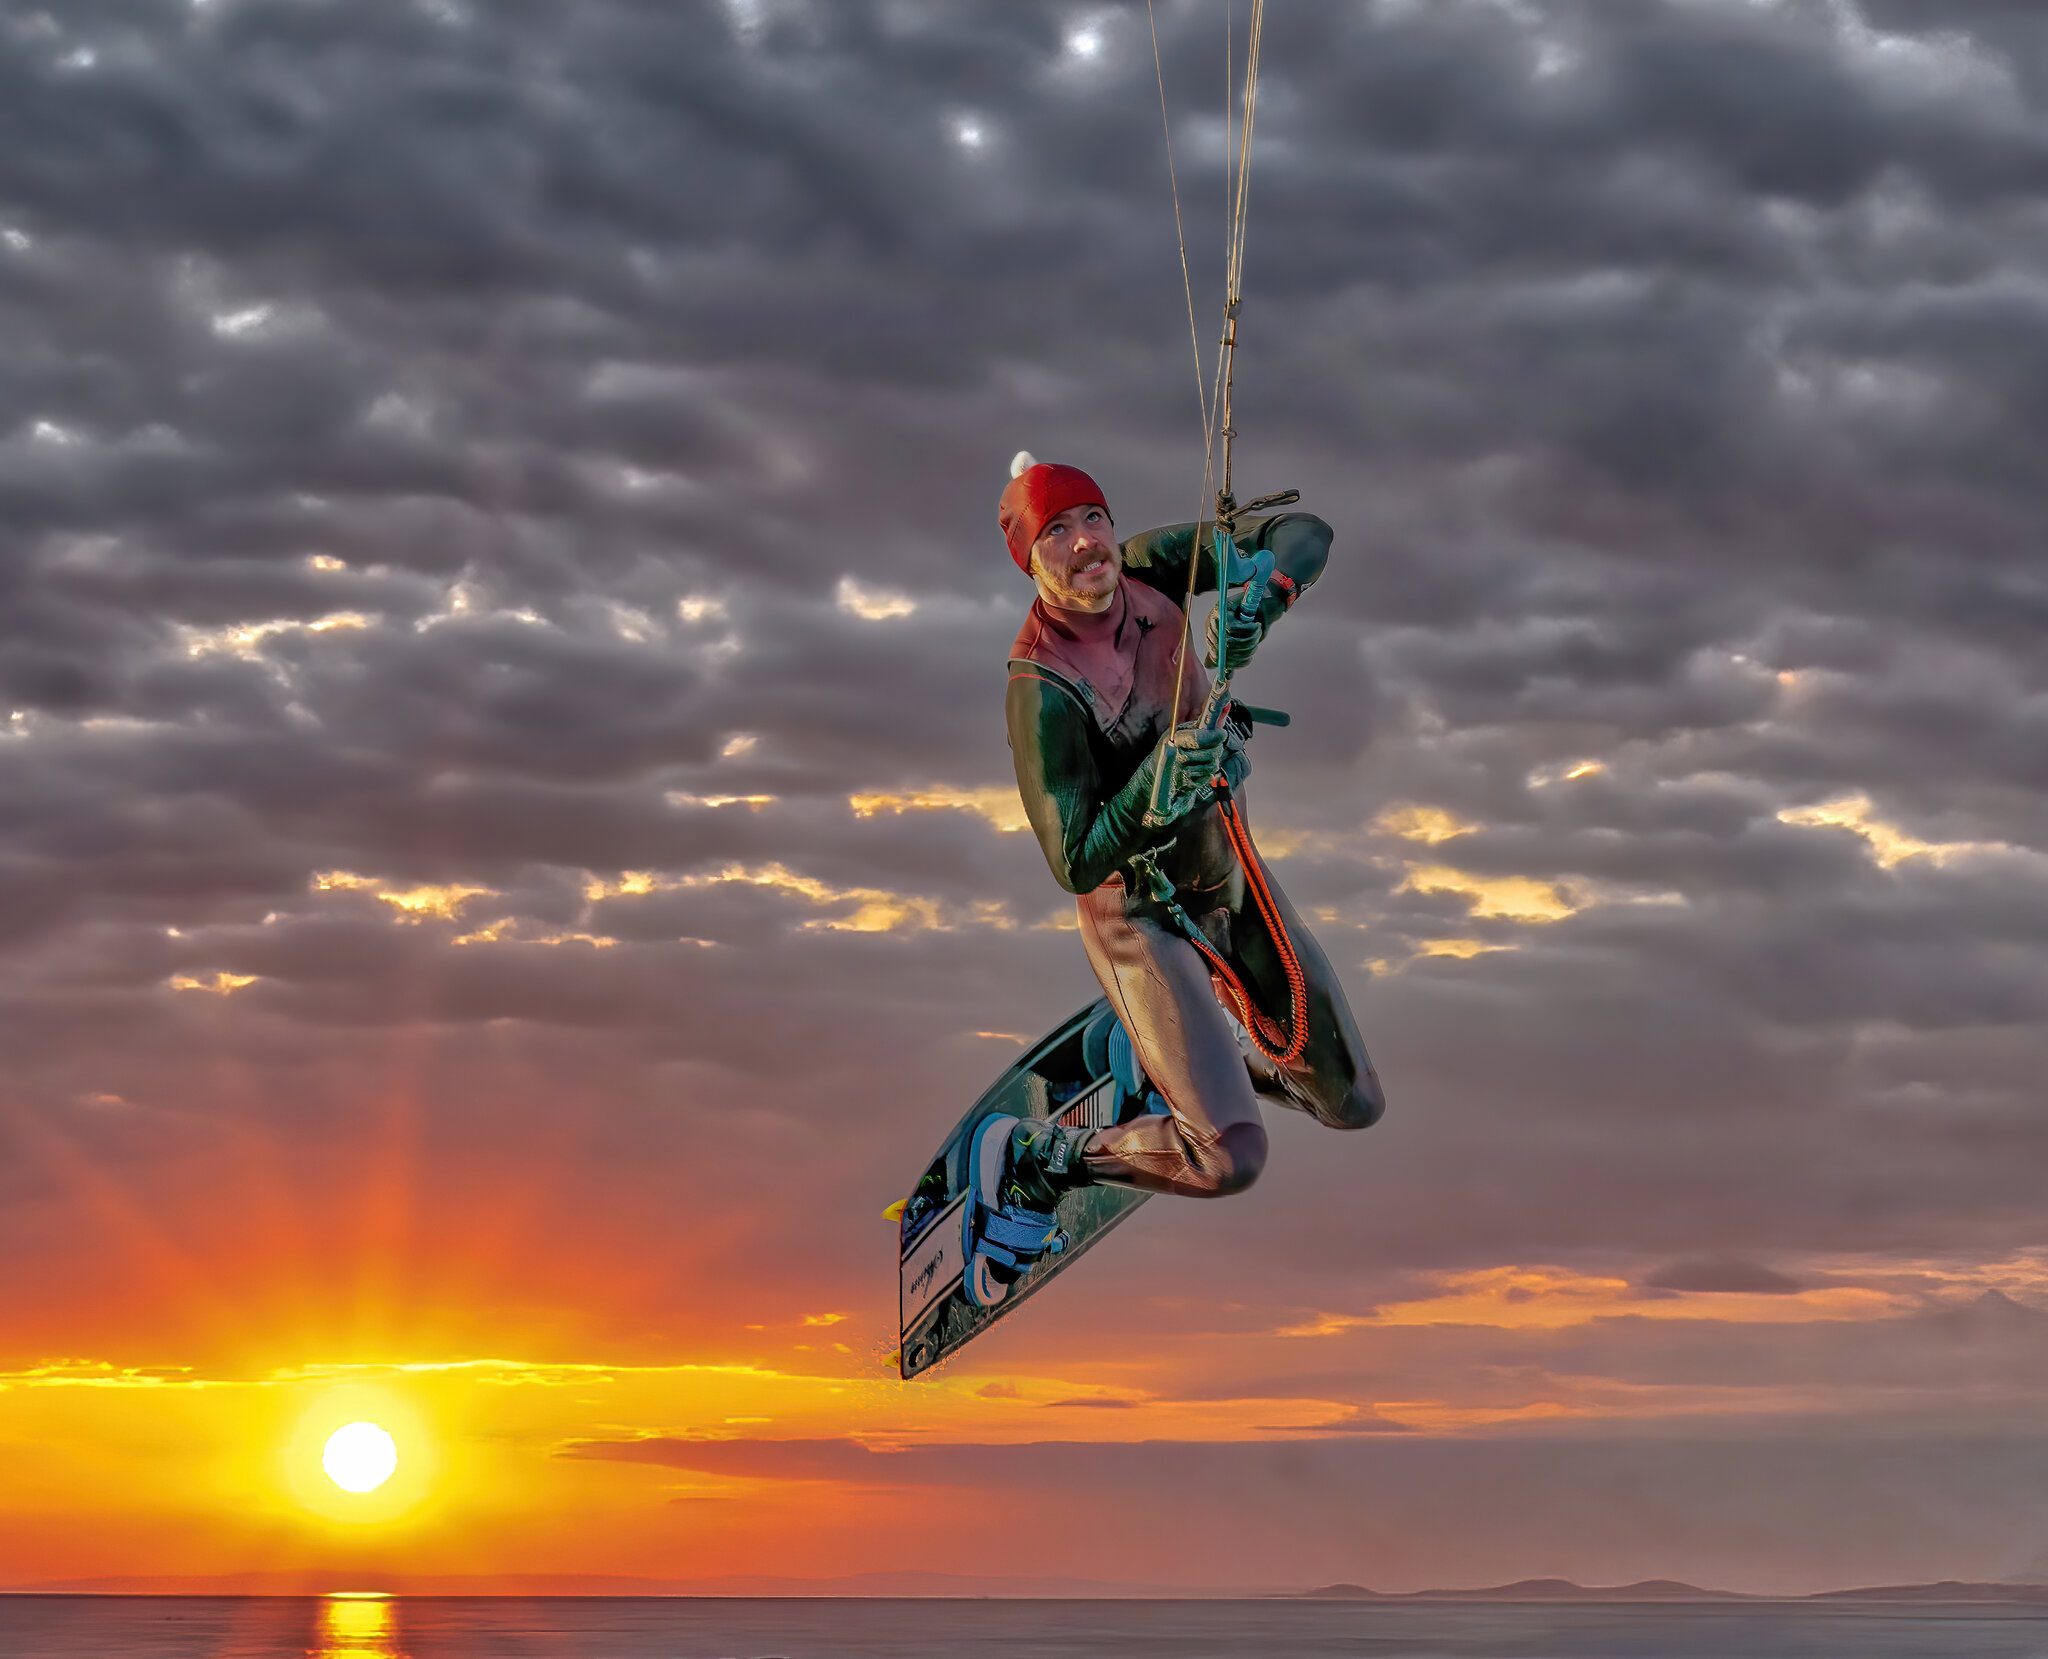 Kite Sufer @ Sunset.jpg